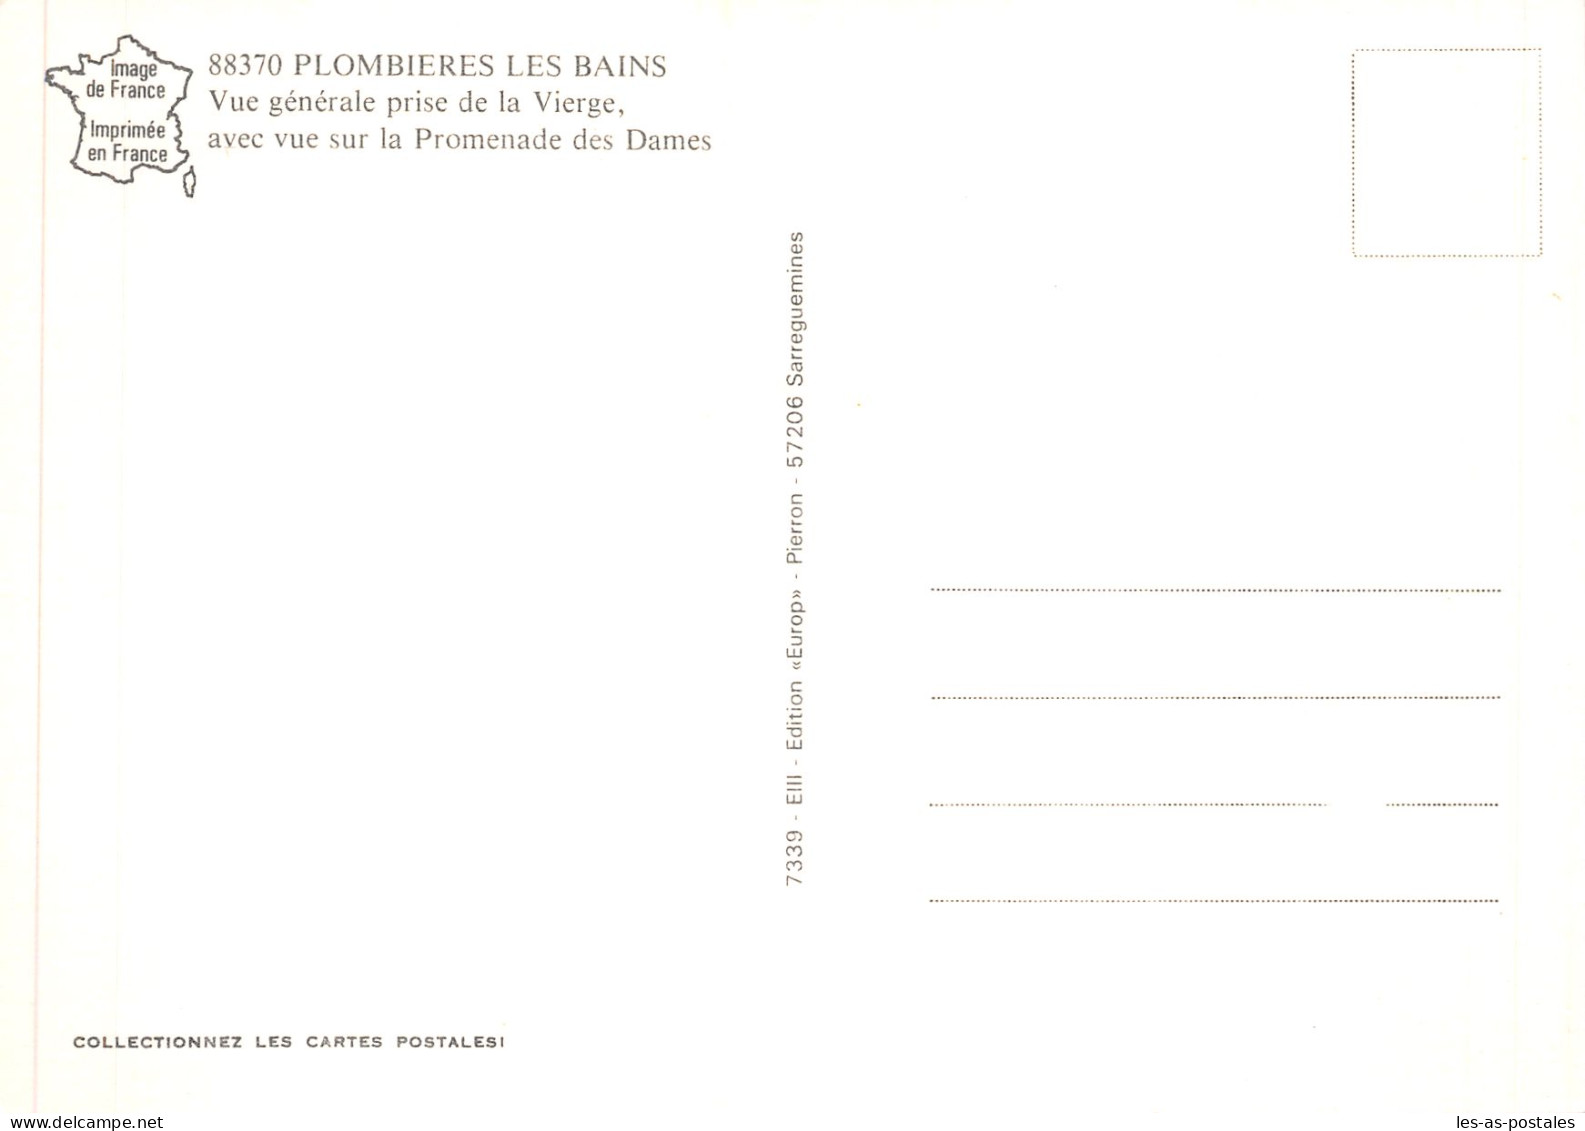 88 PLOMBIERE LES BAINS COTEAU DE LA VIERGE - Plombieres Les Bains